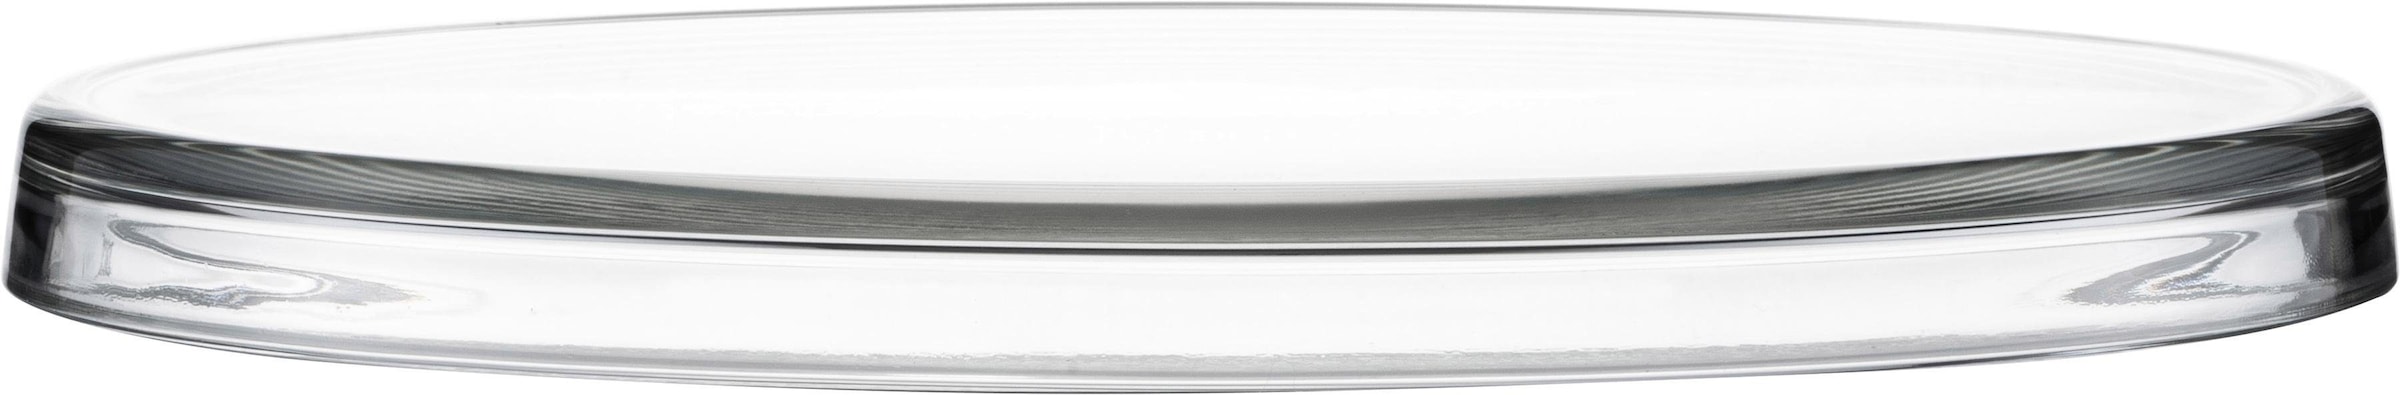 Tortenplatte »Tortenplatte 301/31 kristall«, satiniertes Kristallglas, Ø 31 cm